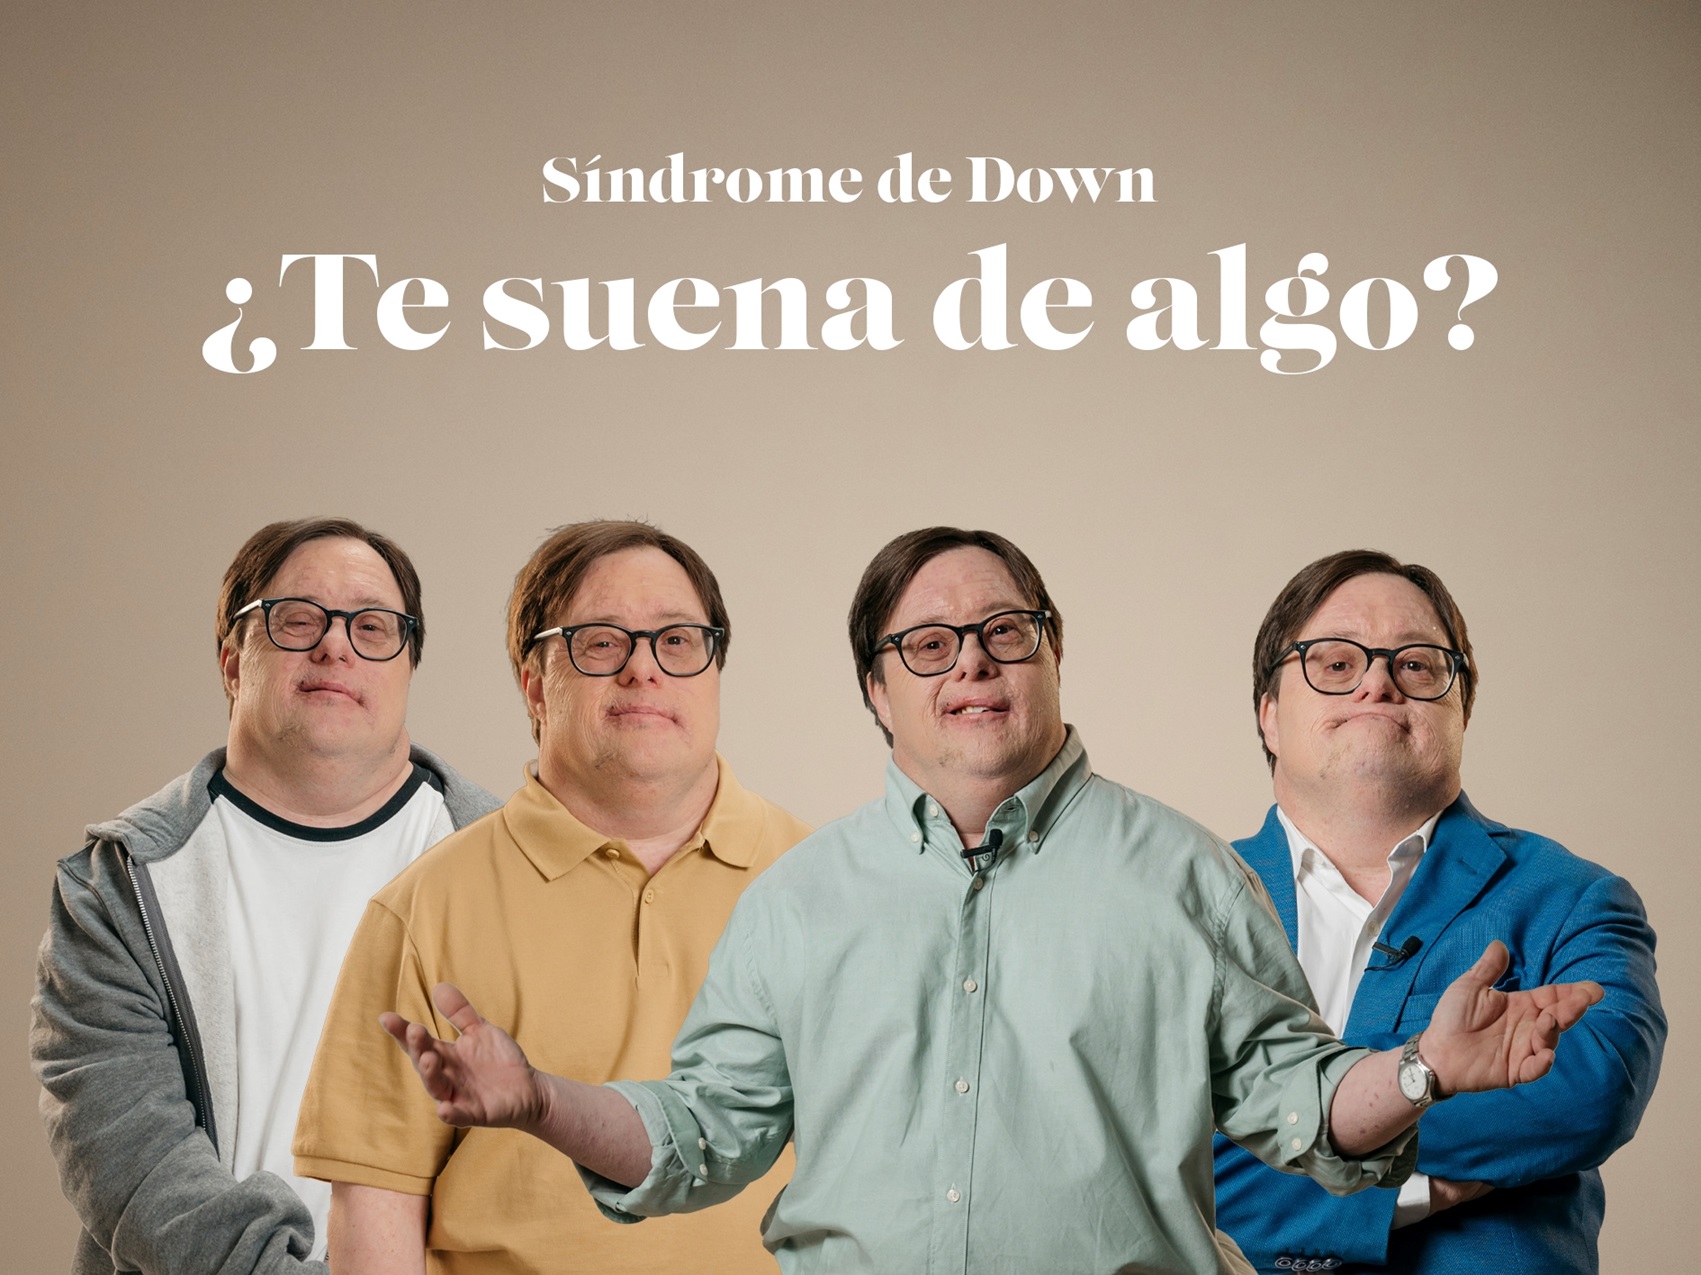 Pablo Pineda invita a la sociedad y a las empresas a apostar por el talento de las personas con síndrome de Down: “son muchas más las similitudes que nos unen que las diferencias que nos separan”